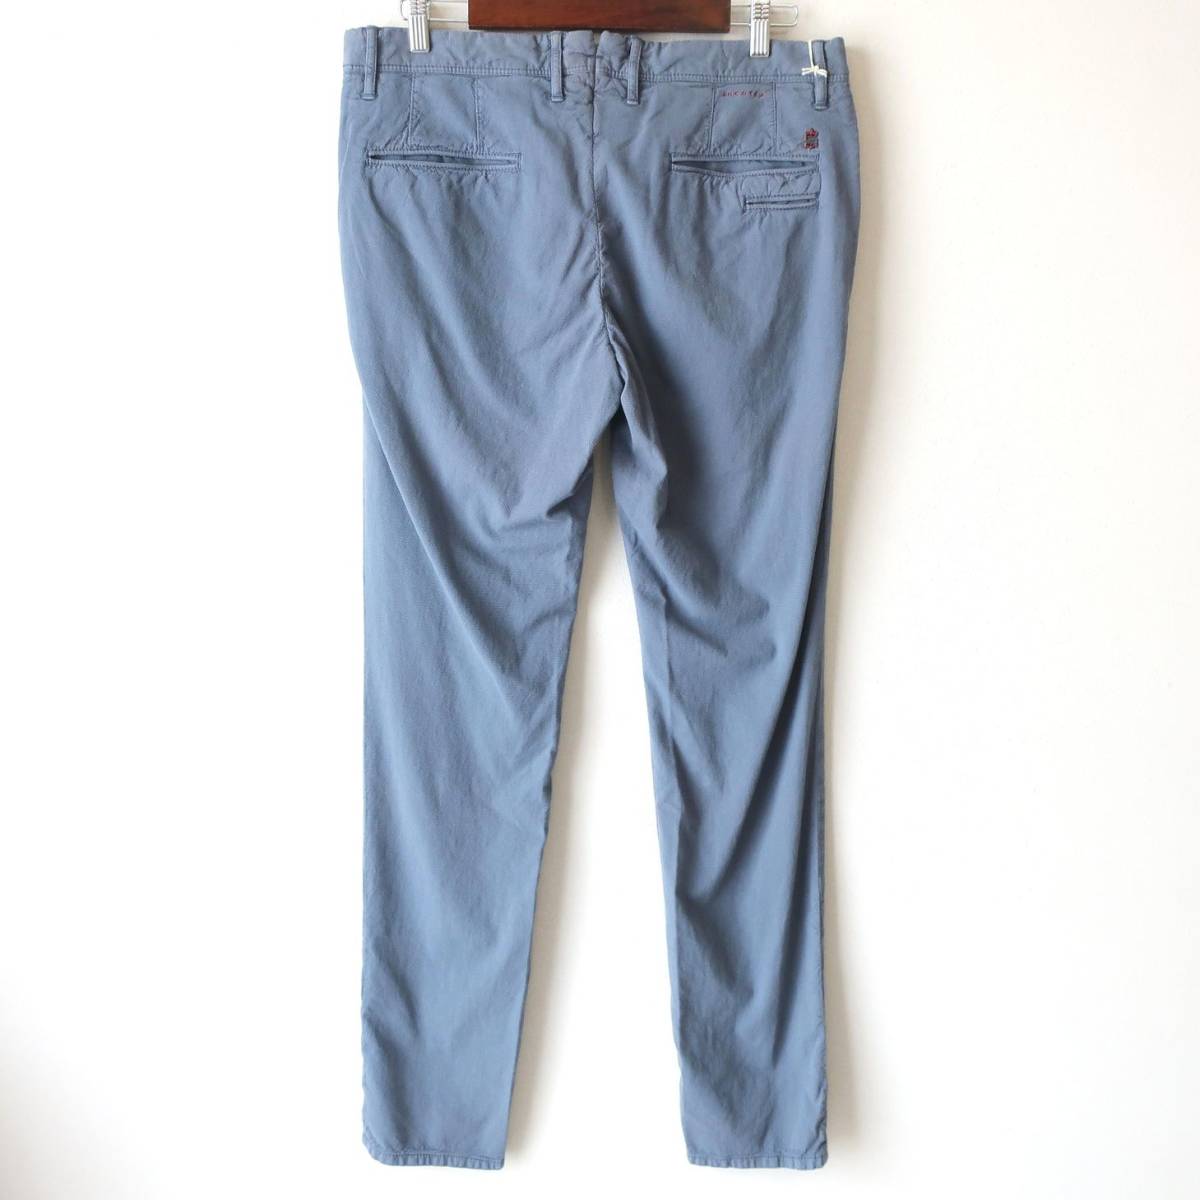  новый товар не использовался INCOTEX INCOTEX тонкий обтягивающий брюки из твила стрейч тонкий тугой текстильный узор брюки синий голубой серый мужской W36 2XL 3L